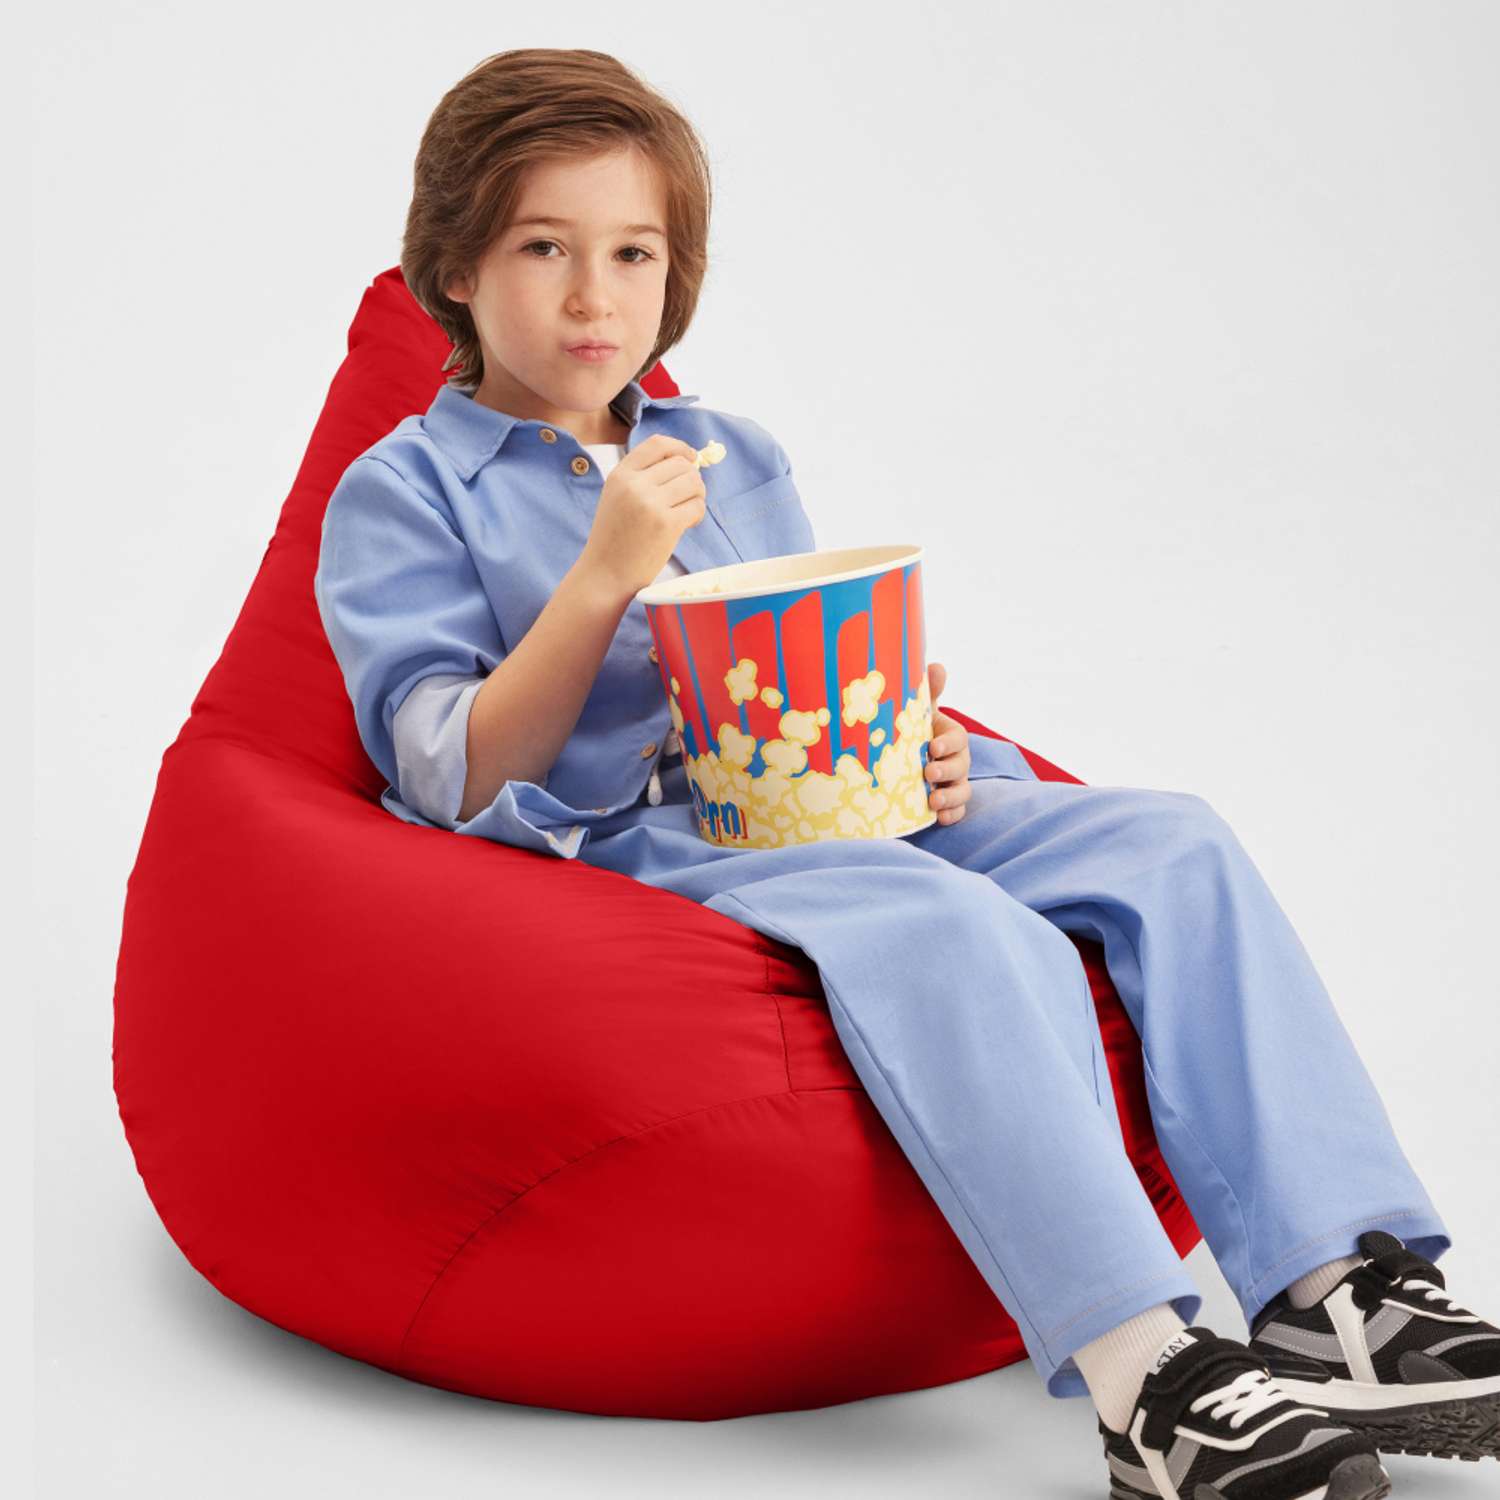 Кресло-мешок груша Bean Joy размер XL оксфорд - фото 6